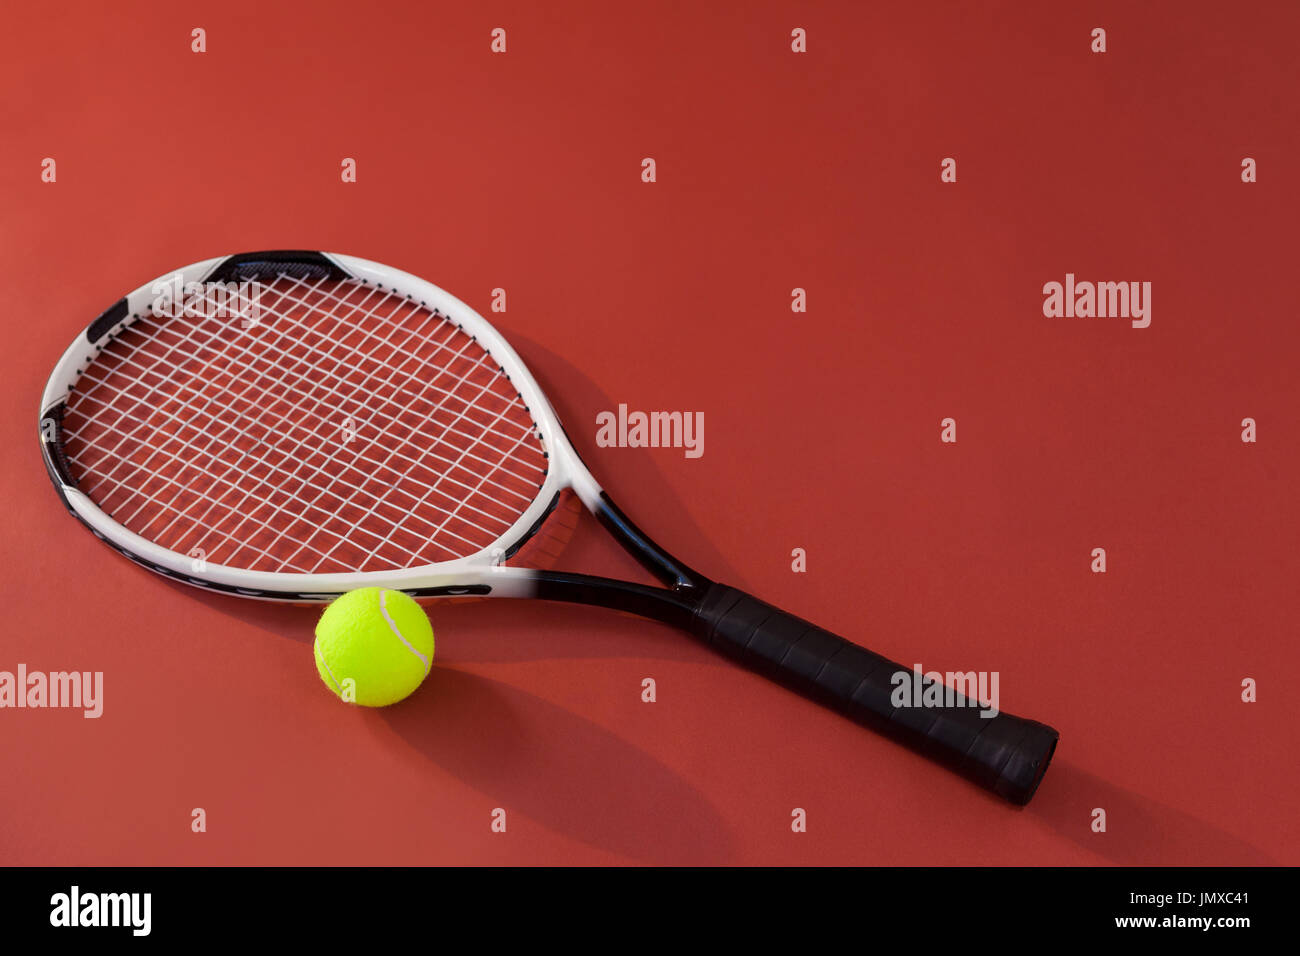 Erhöhte Ansicht der Tennisschläger und fluoreszierenden gelben Ball  kastanienbrauner Hintergrund Stockfotografie - Alamy